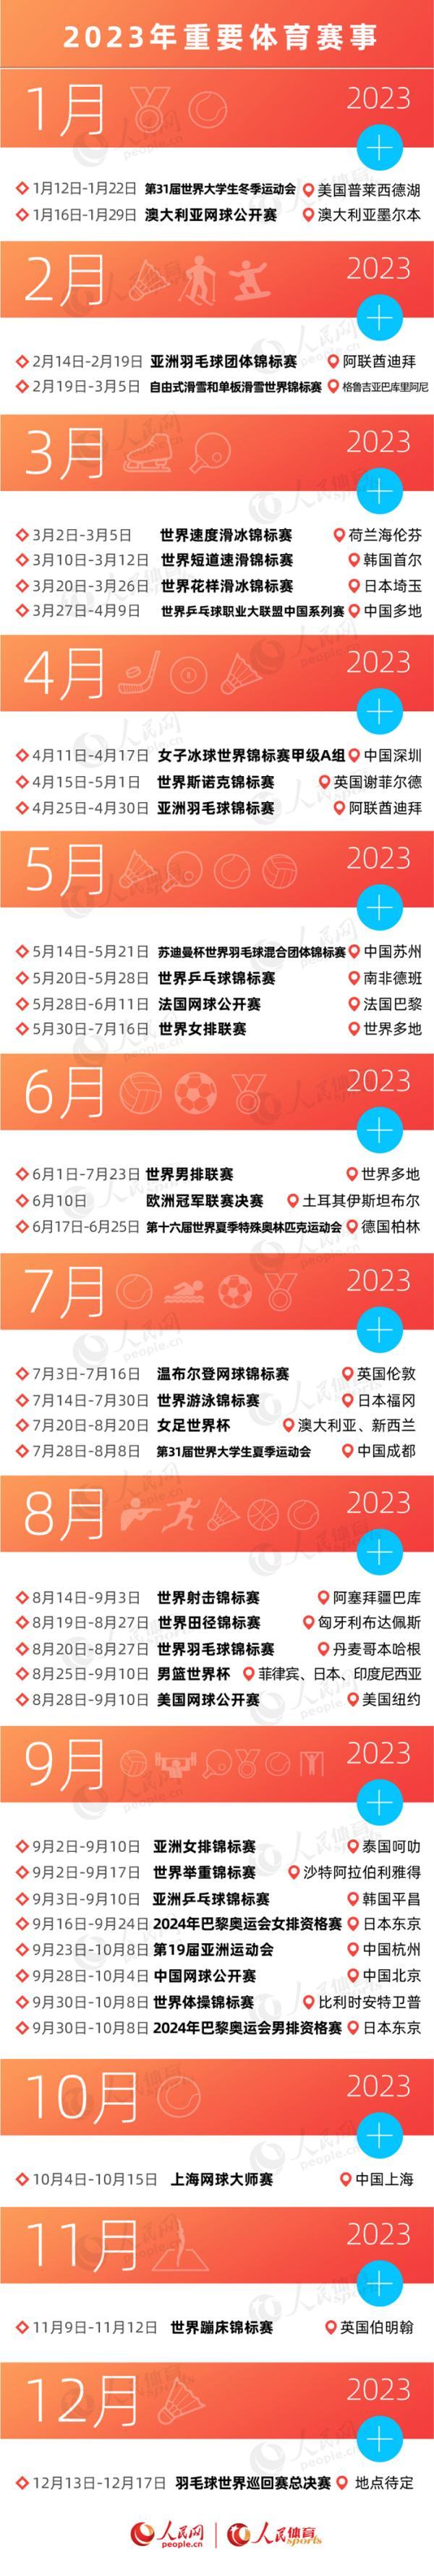 2023年也是体育大年，因疫情延期的成都大运会、杭州亚运会，